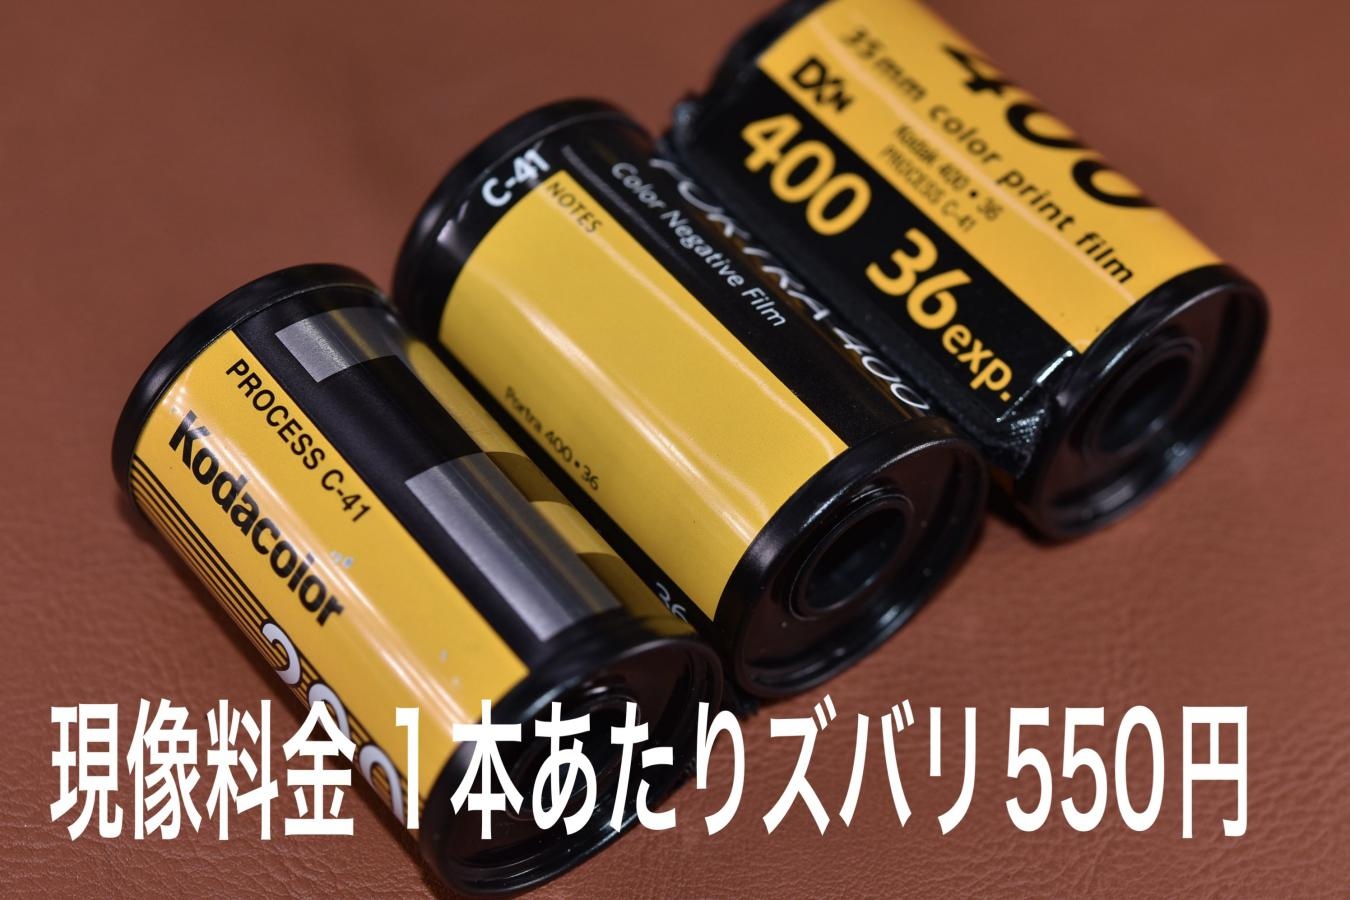 【郵送対応】スマホ転送(フィルム現像込) 135mm FUJIFILM・Kodak C41記号表記のみ対応 スマホ転送1本あたり1100円【Web上クレジットカードのみ対応】